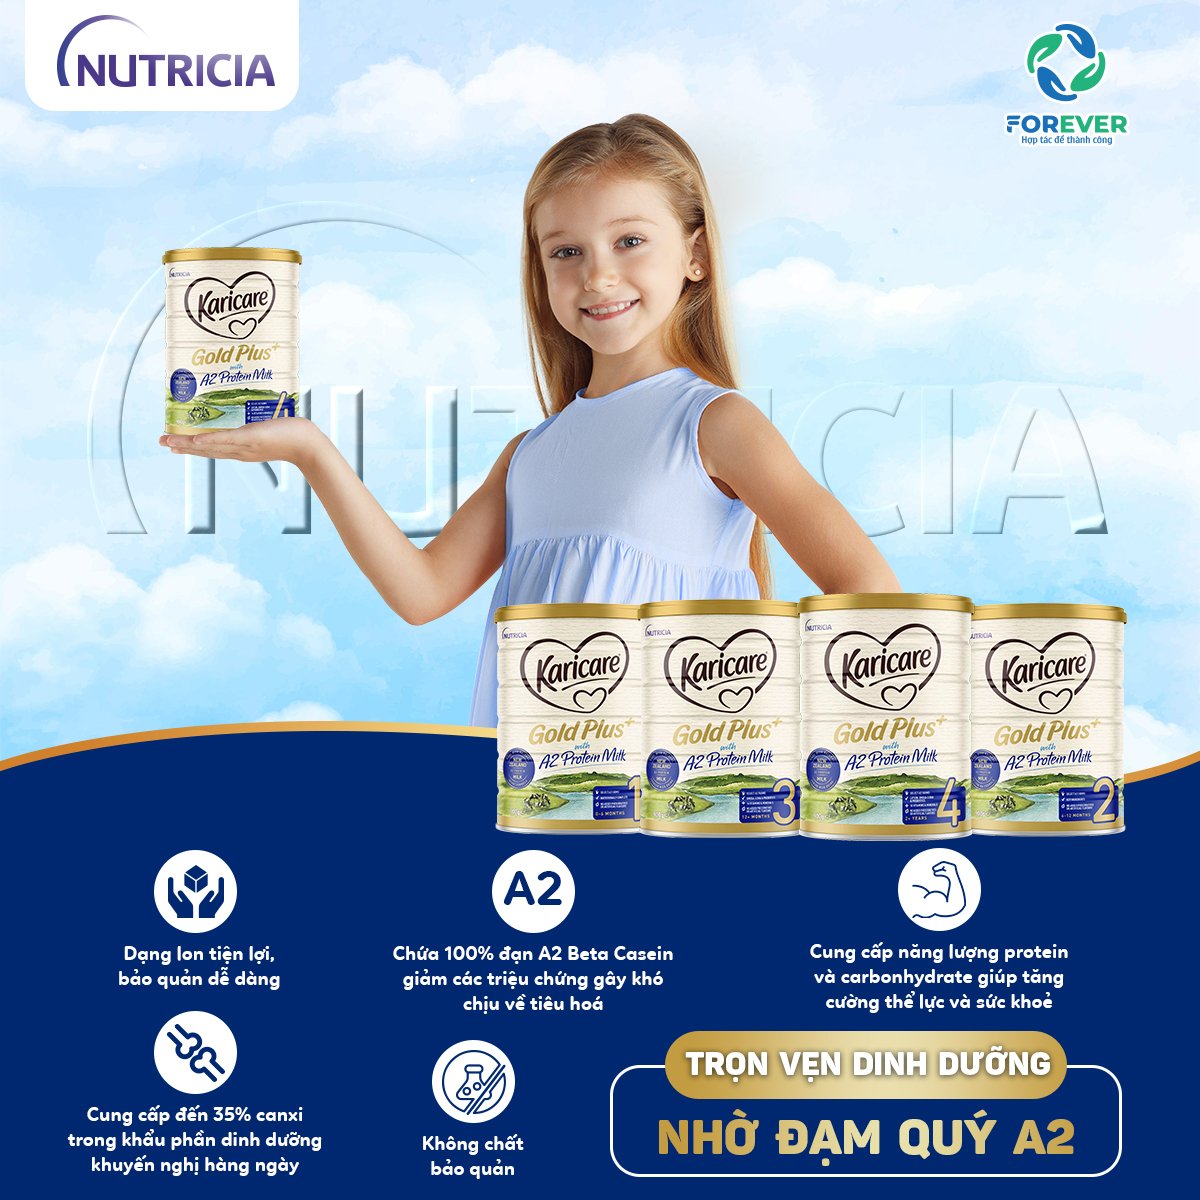 Sữa Karicare số 4 dành cho trẻ trên 2 tuổi lười ăn, chậm tăng cân 